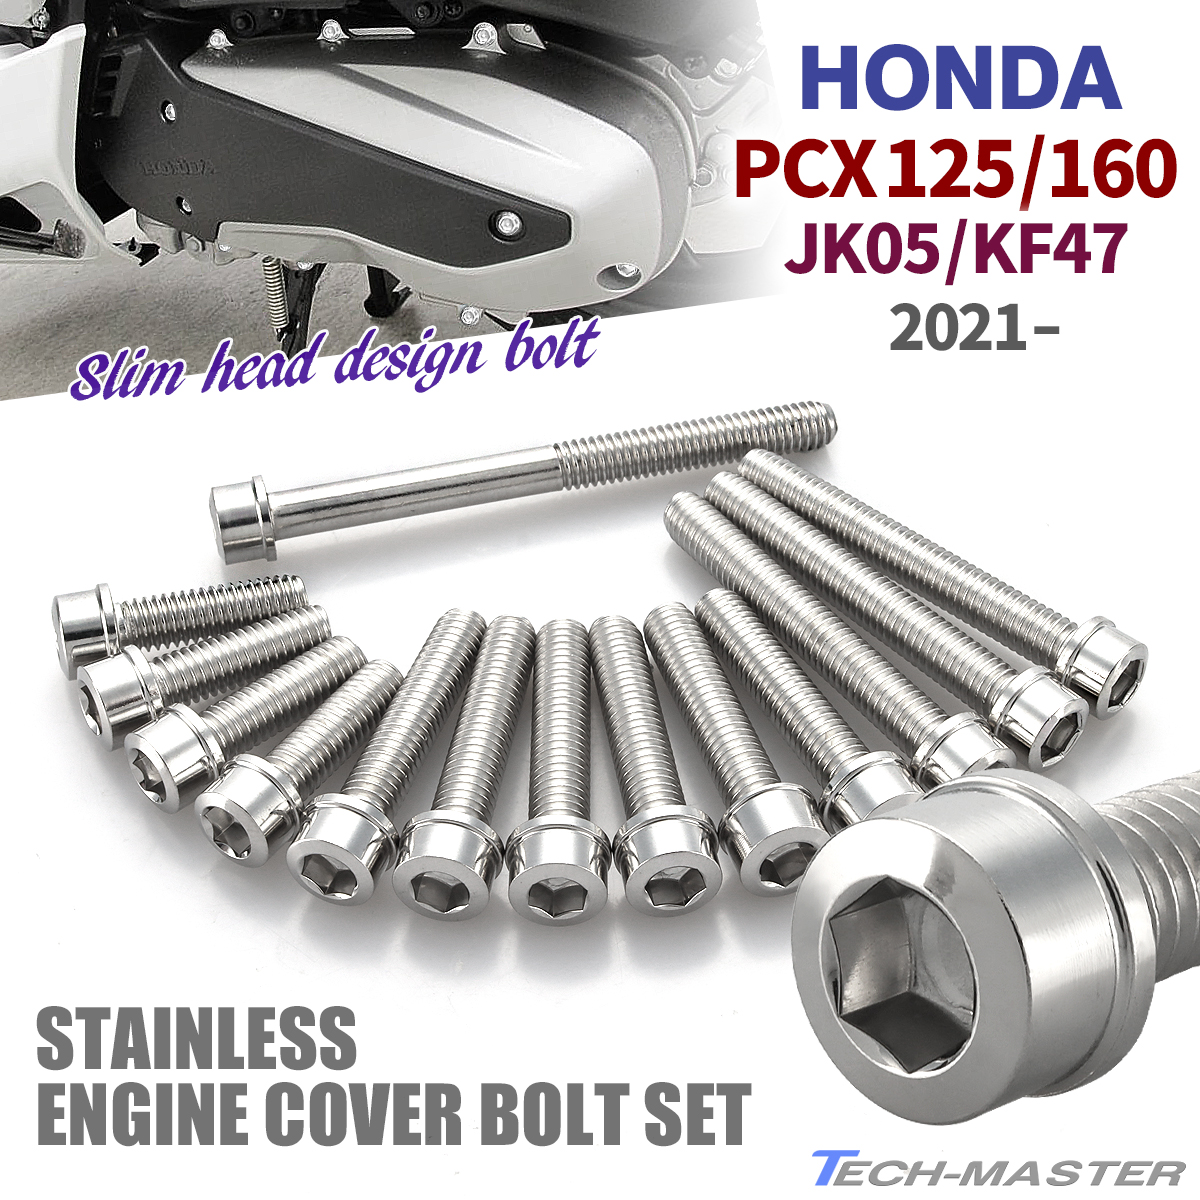 PCX125 PCX160 JK05 KF47 2021 год ~ блок цилиндров покрытие болт 14 шт. комплект из нержавеющей стали Honda car для серебряный цвет TB12091